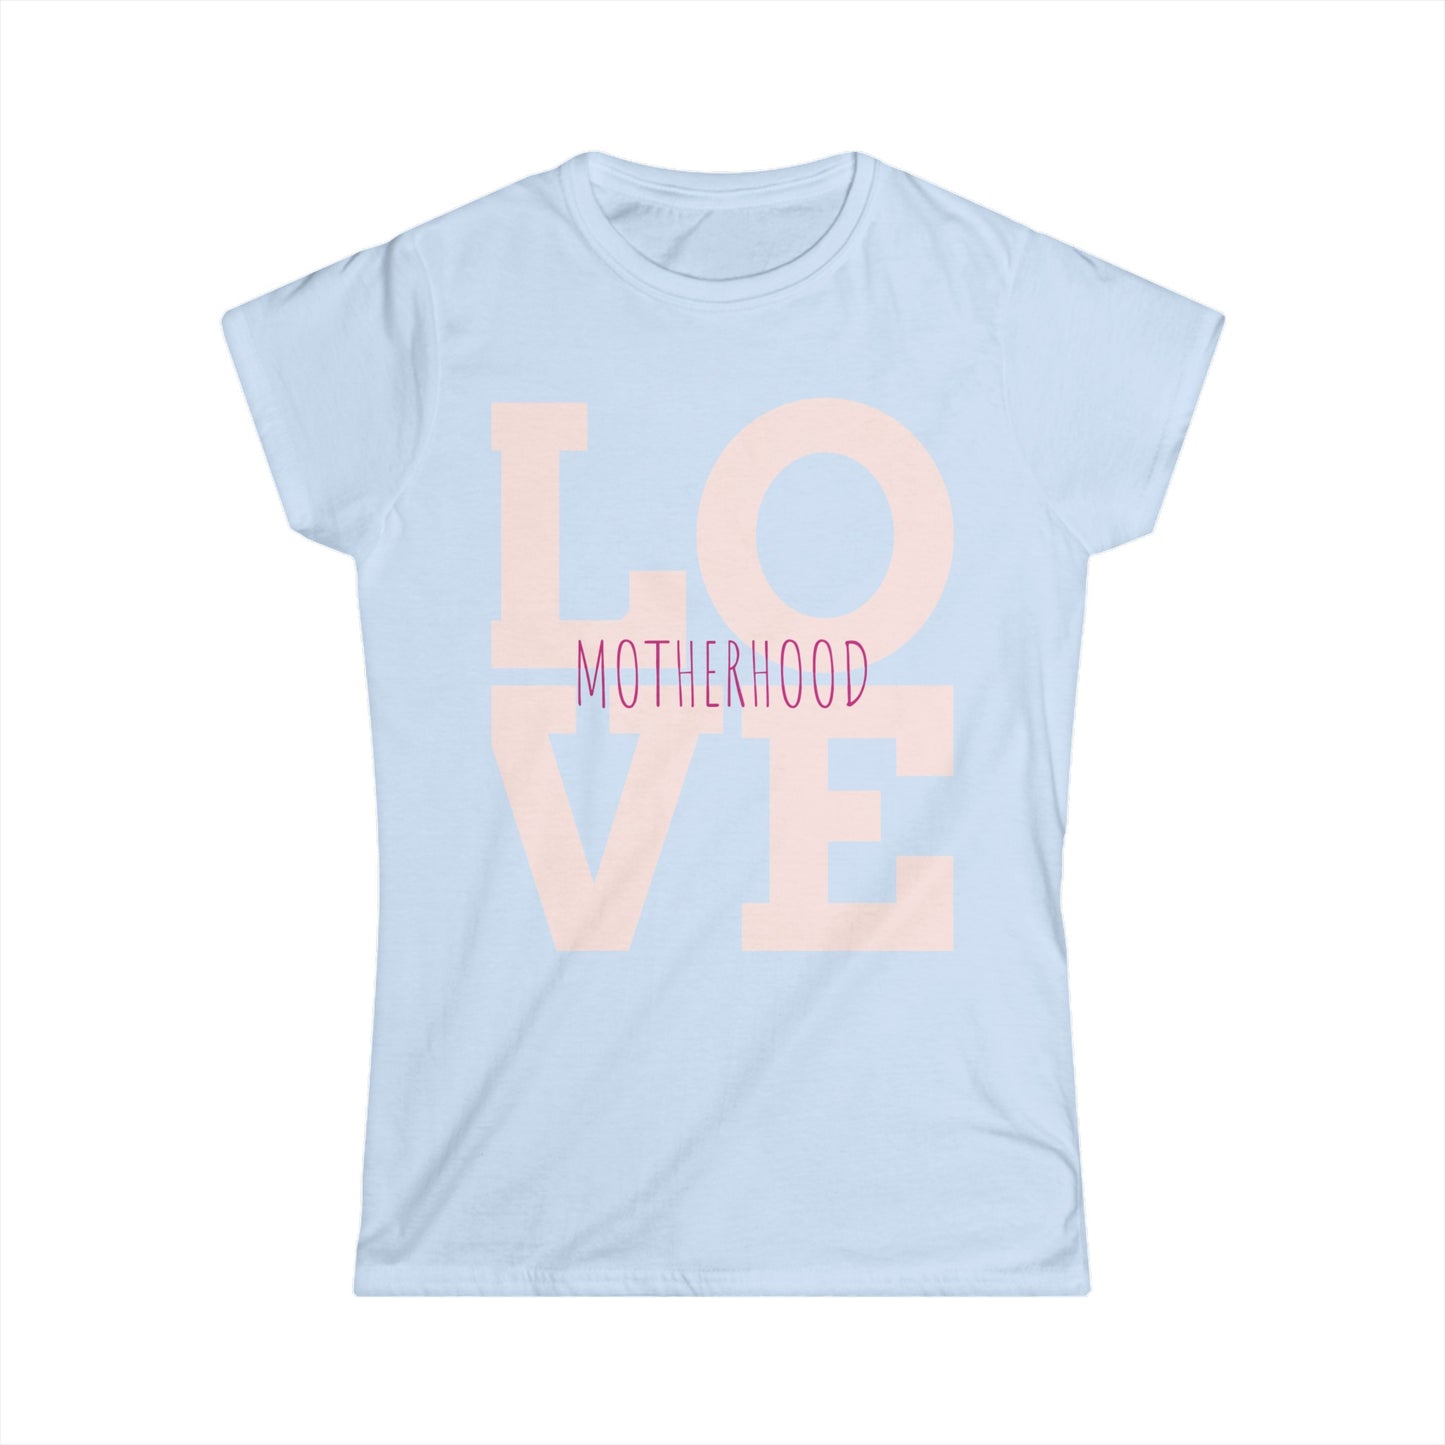 Motherhood Love T-Shirt